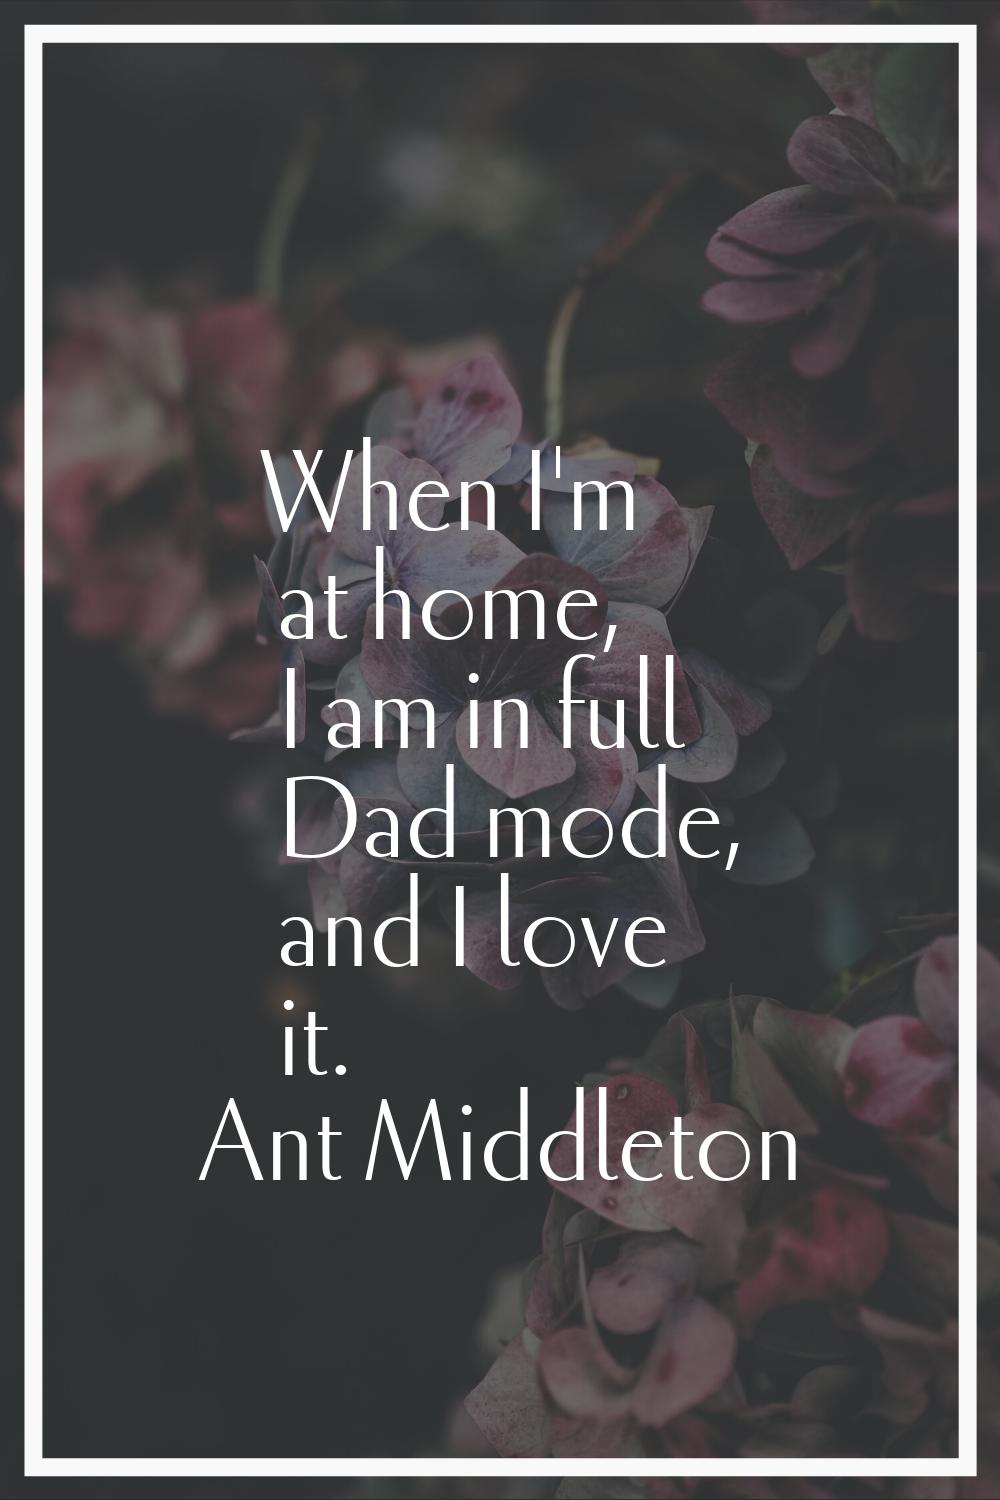 When I'm at home, I am in full Dad mode, and I love it.